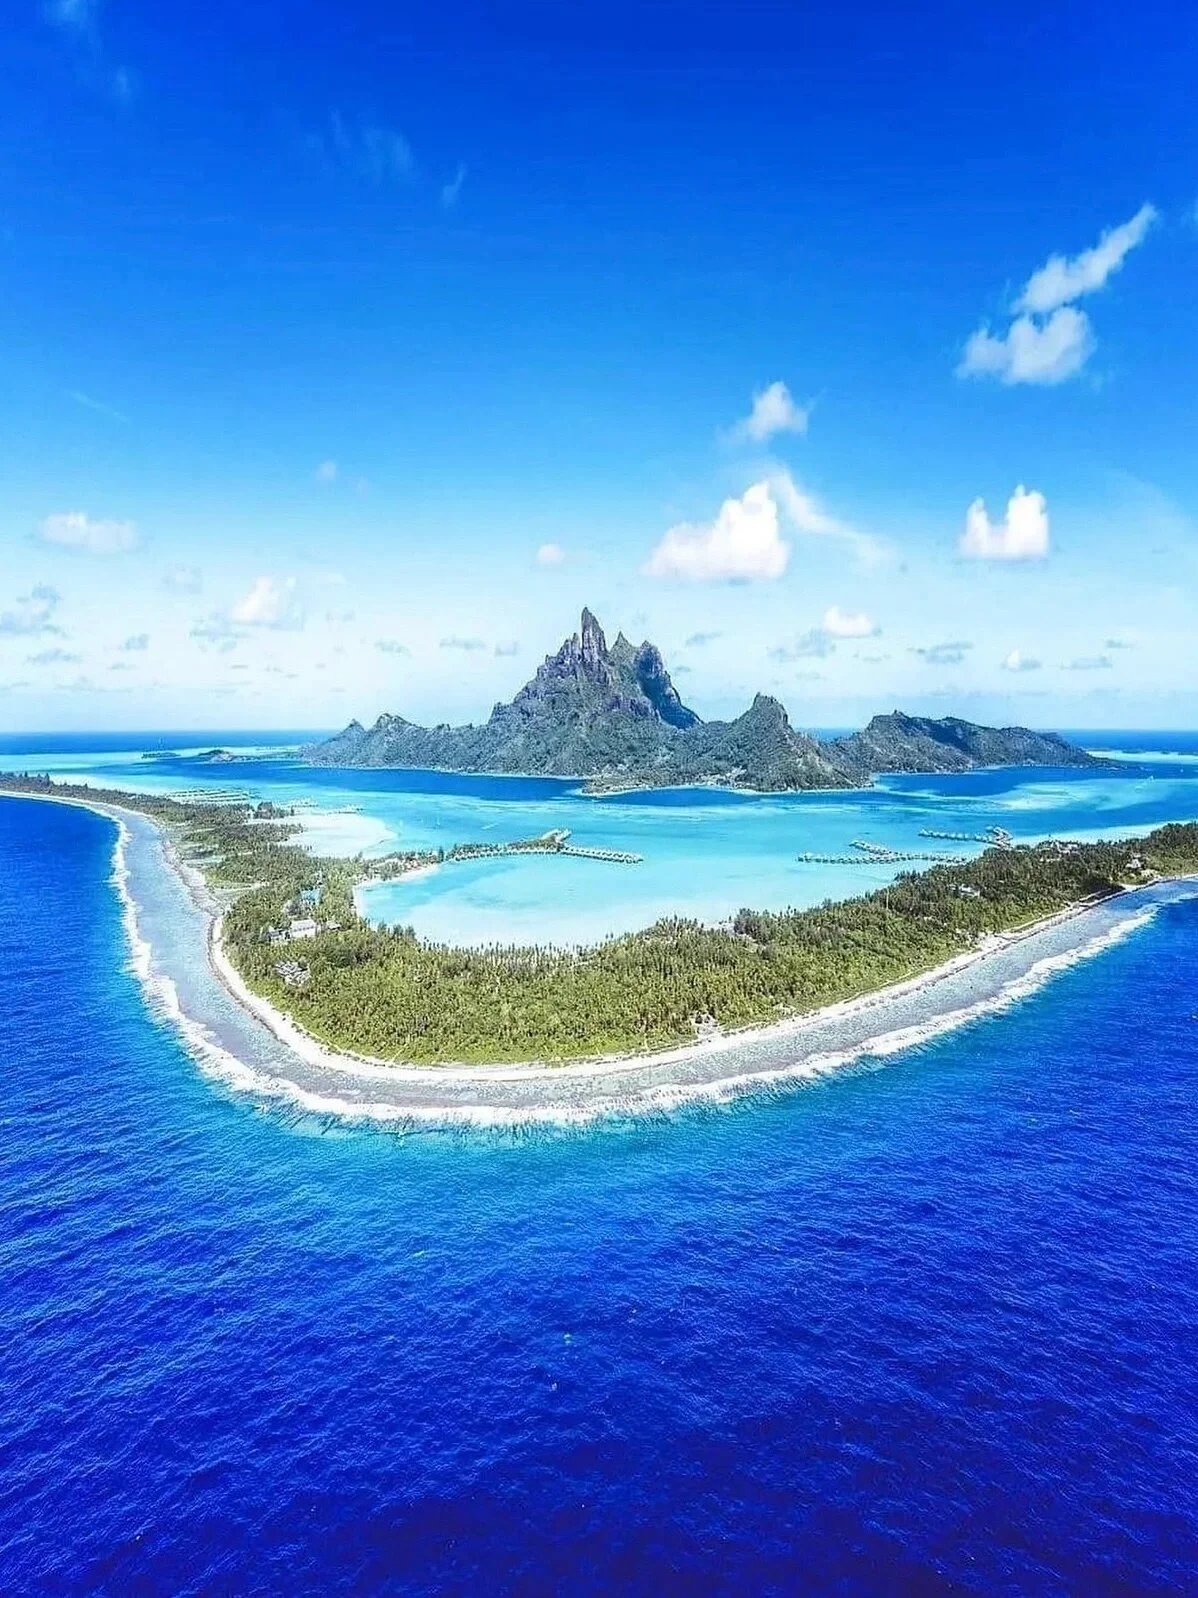 海岛界爱马仕 | 世界上最性感的岛屿之一波拉波拉岛